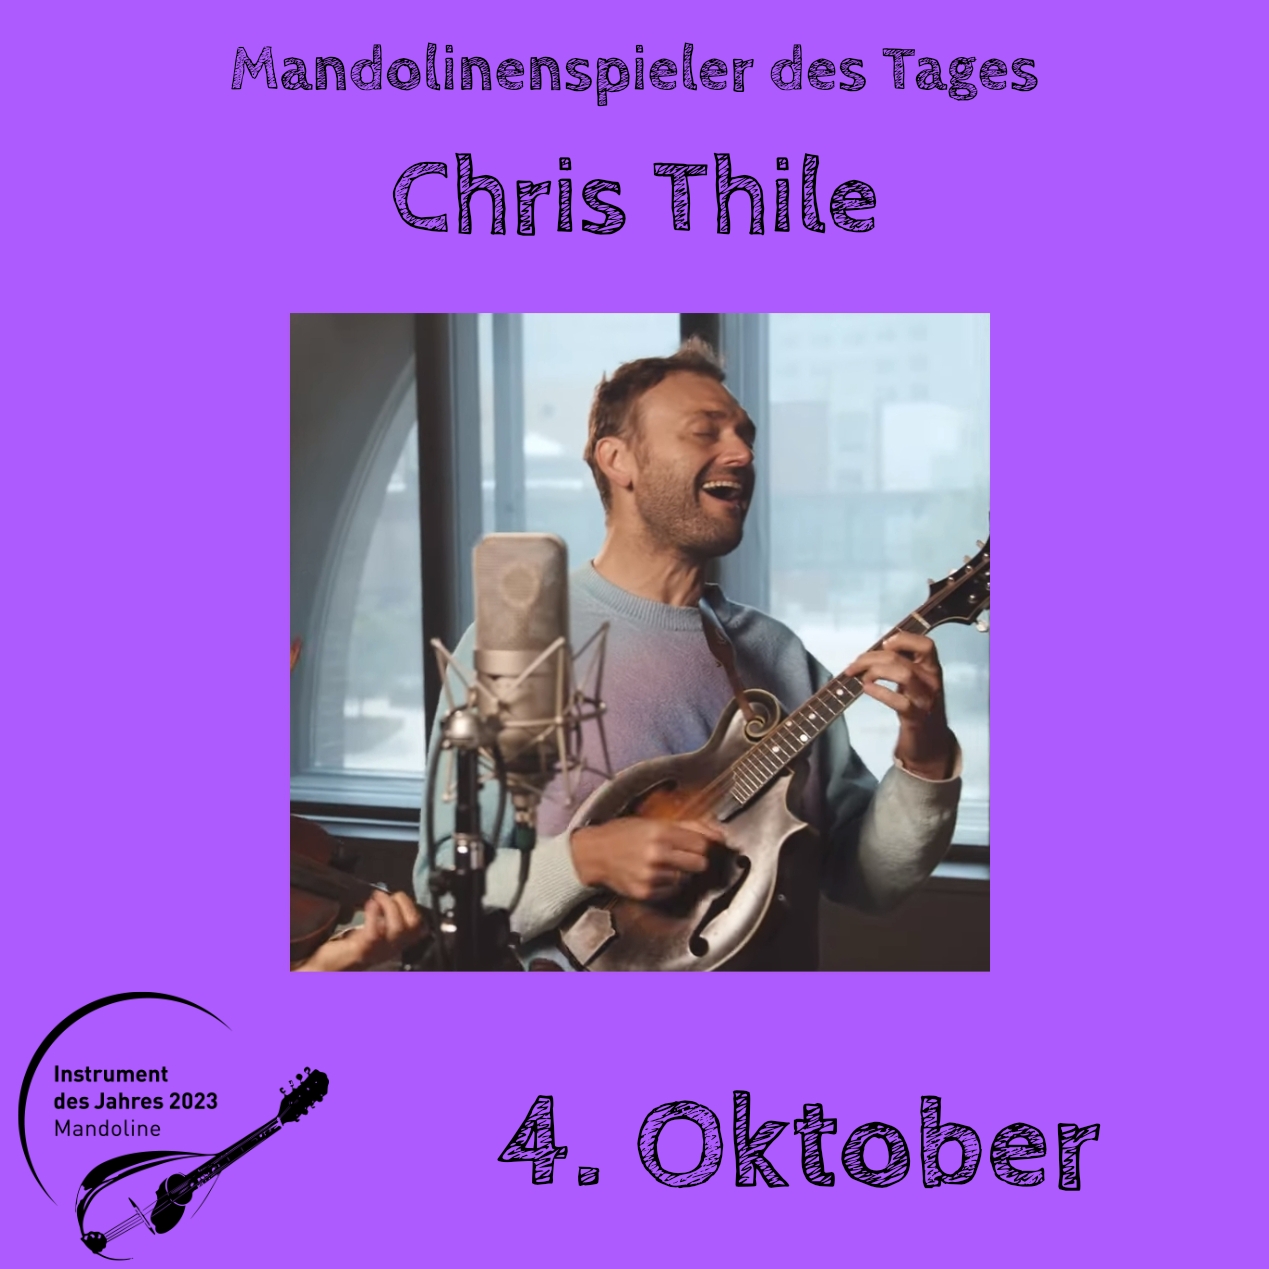 4. Oktober - Chris Thile Mandoline Instrument des Jahres 2023 Mandolinenspieler Mandolinenspielerin des Tages